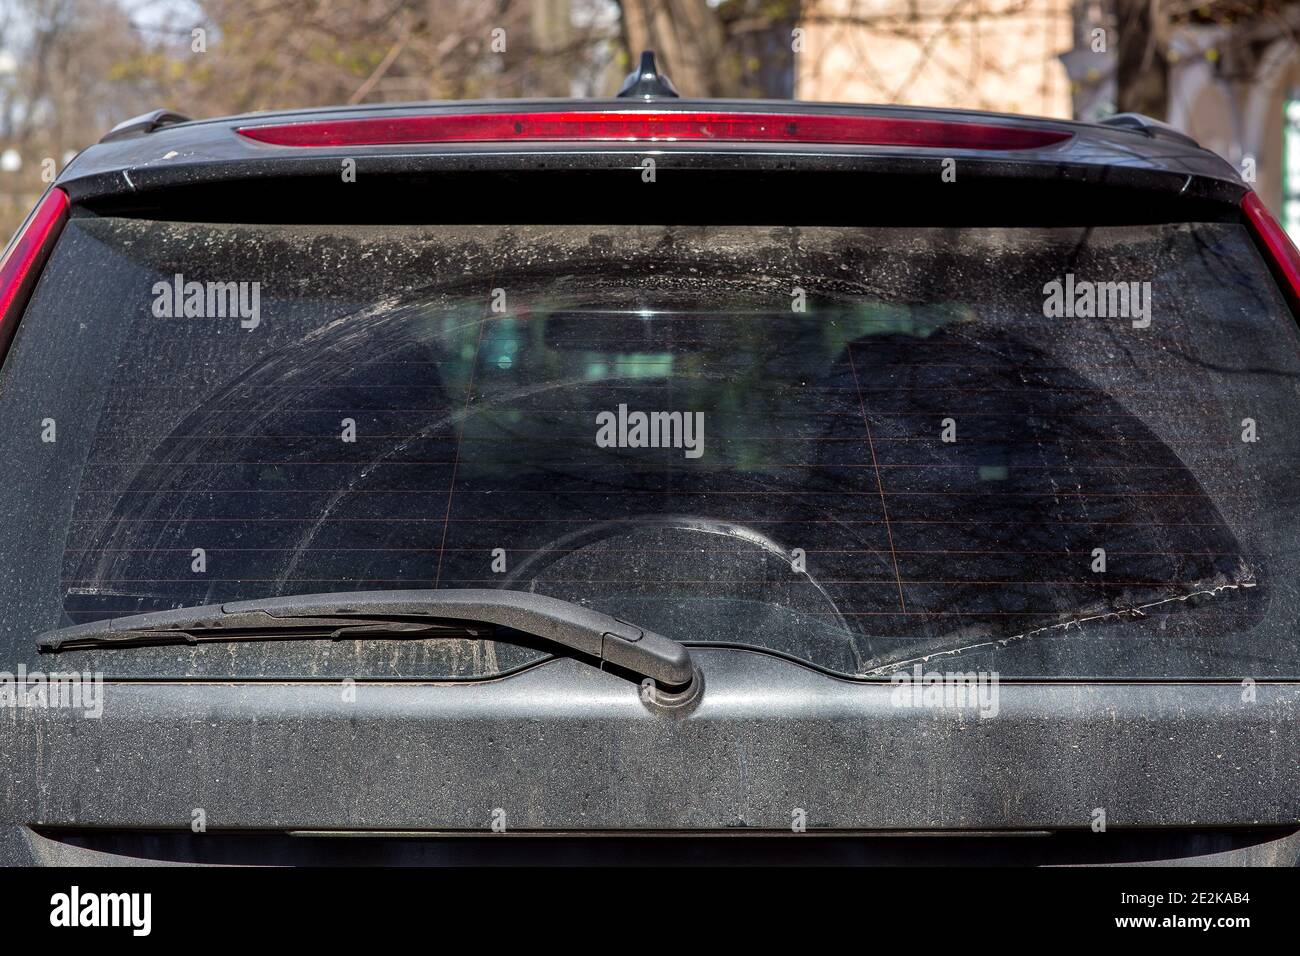 Windschutzscheibenwischer verschmutztes Auto von getrocknetem Schmutz auf  der Heckscheibe Stockfotografie - Alamy